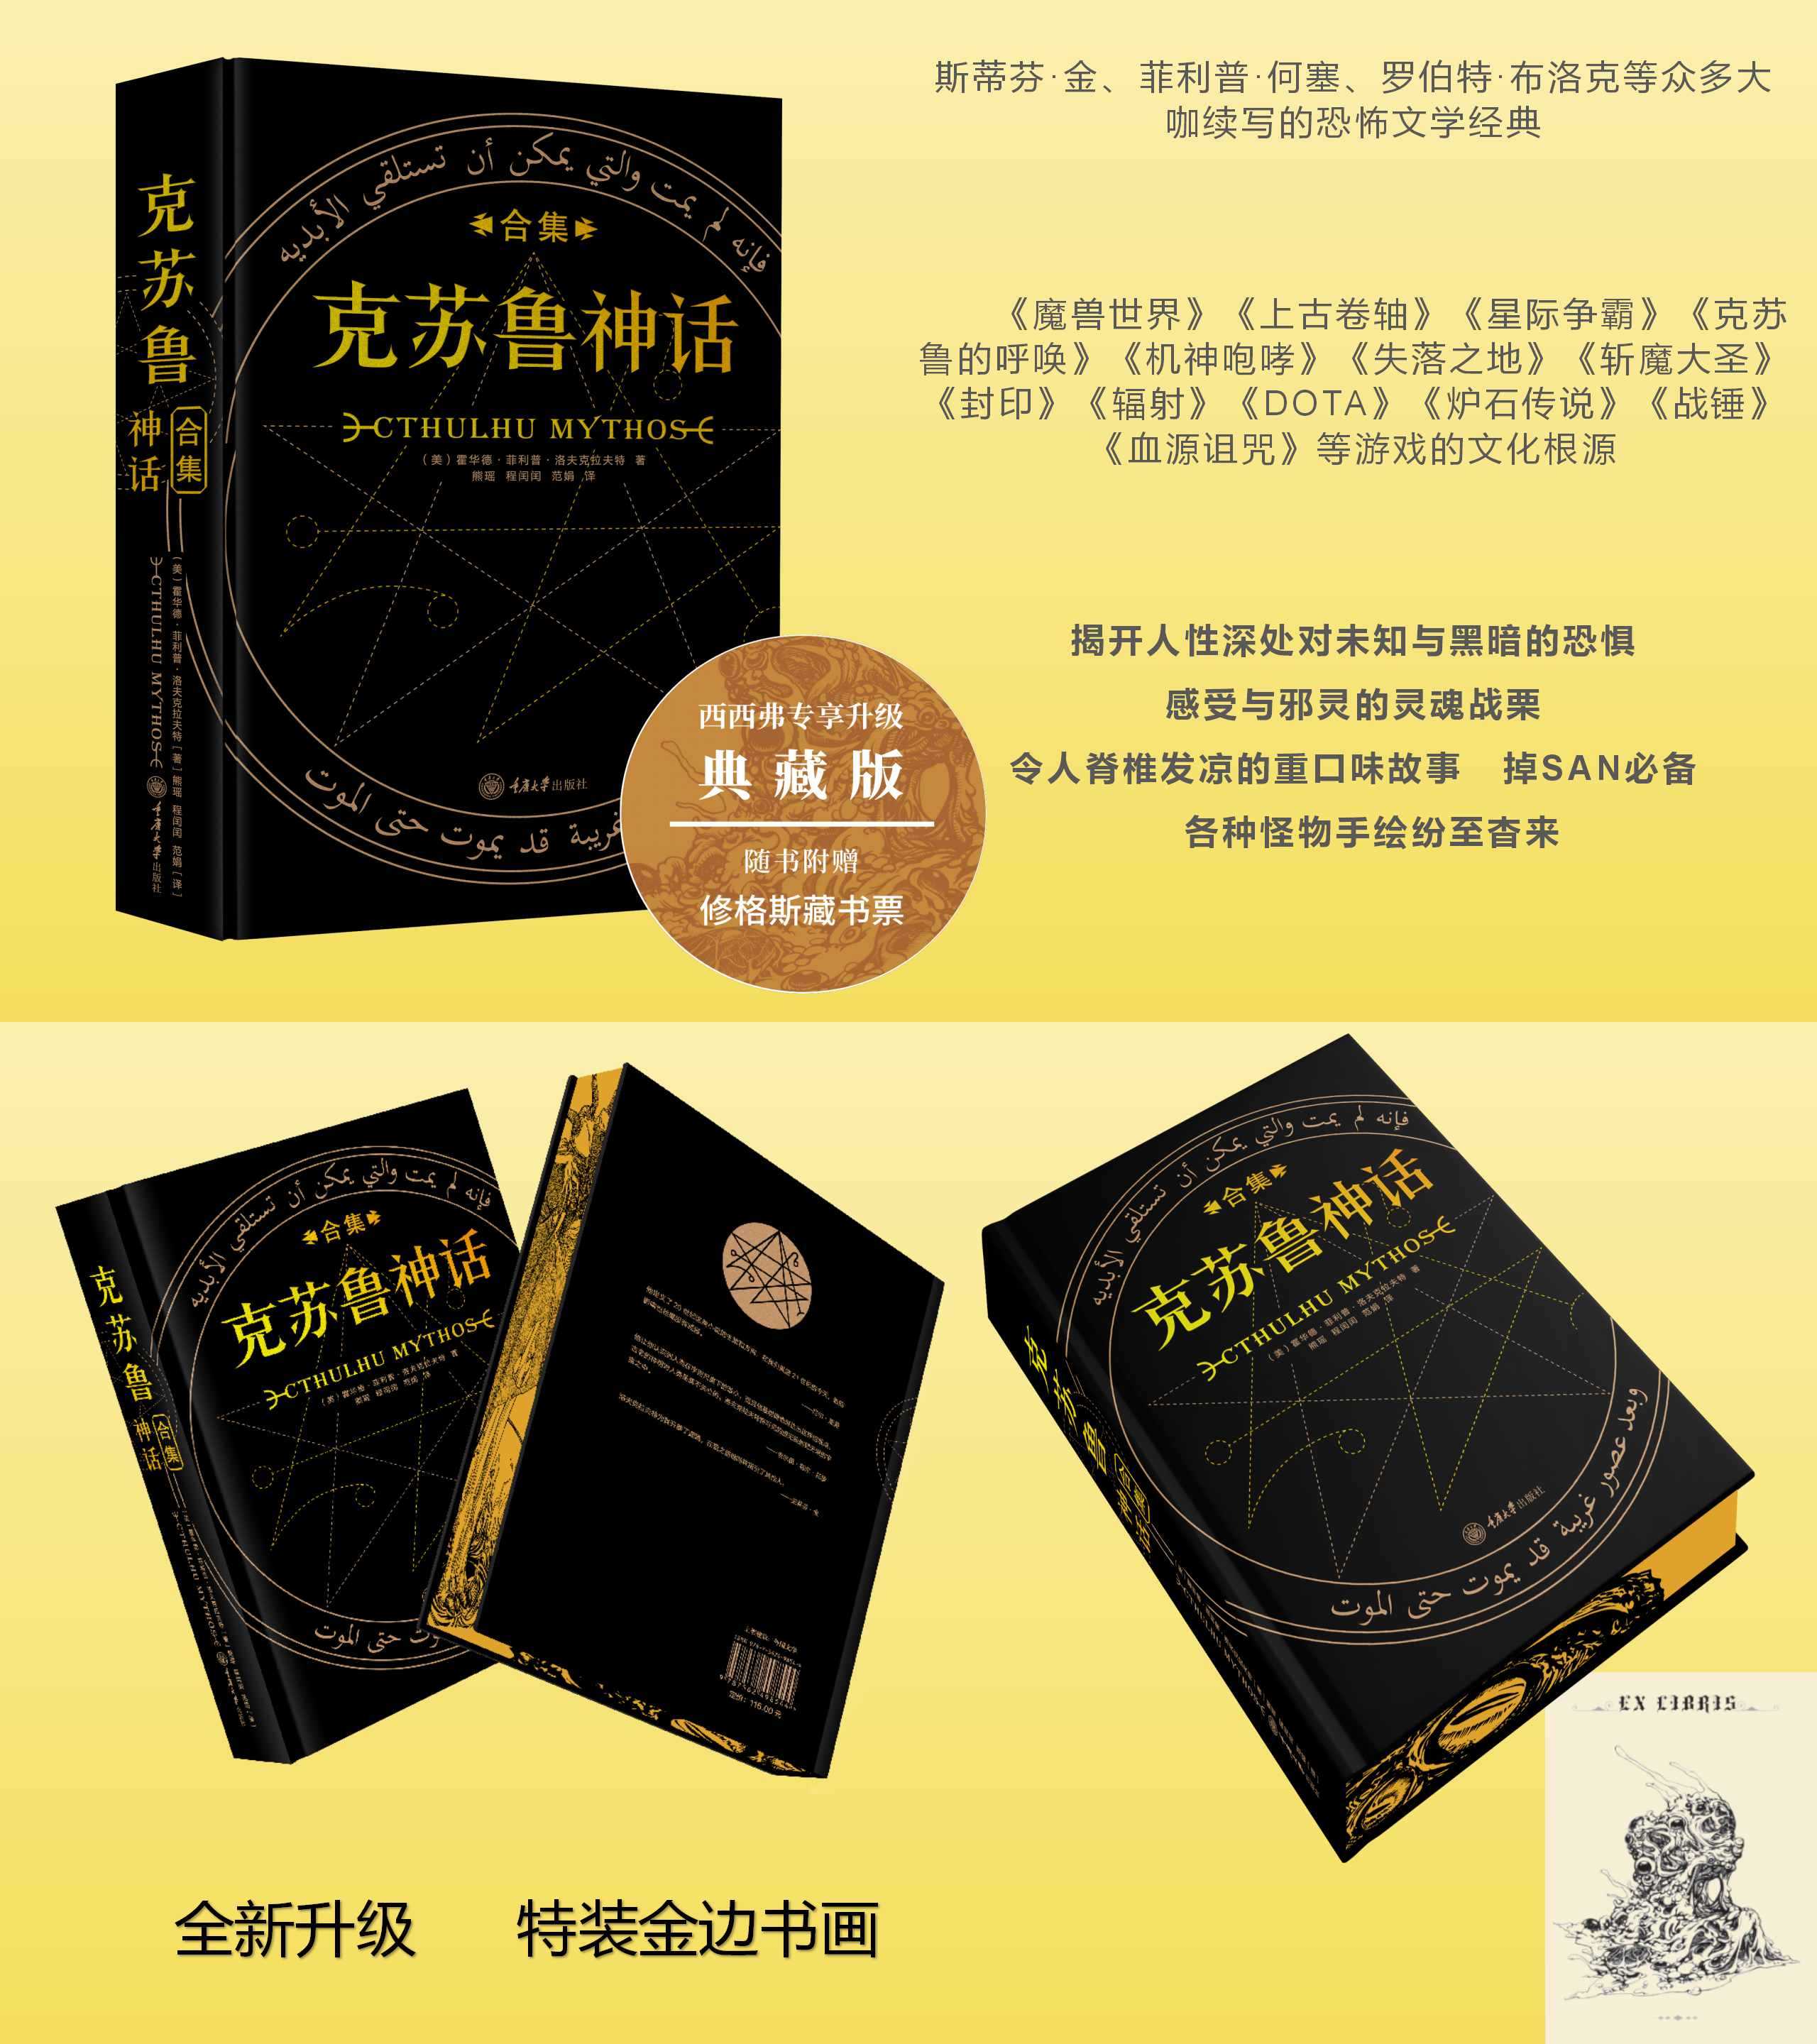 西西弗书店 克苏鲁神话合集(刷边版)西西弗专享典藏文学经典